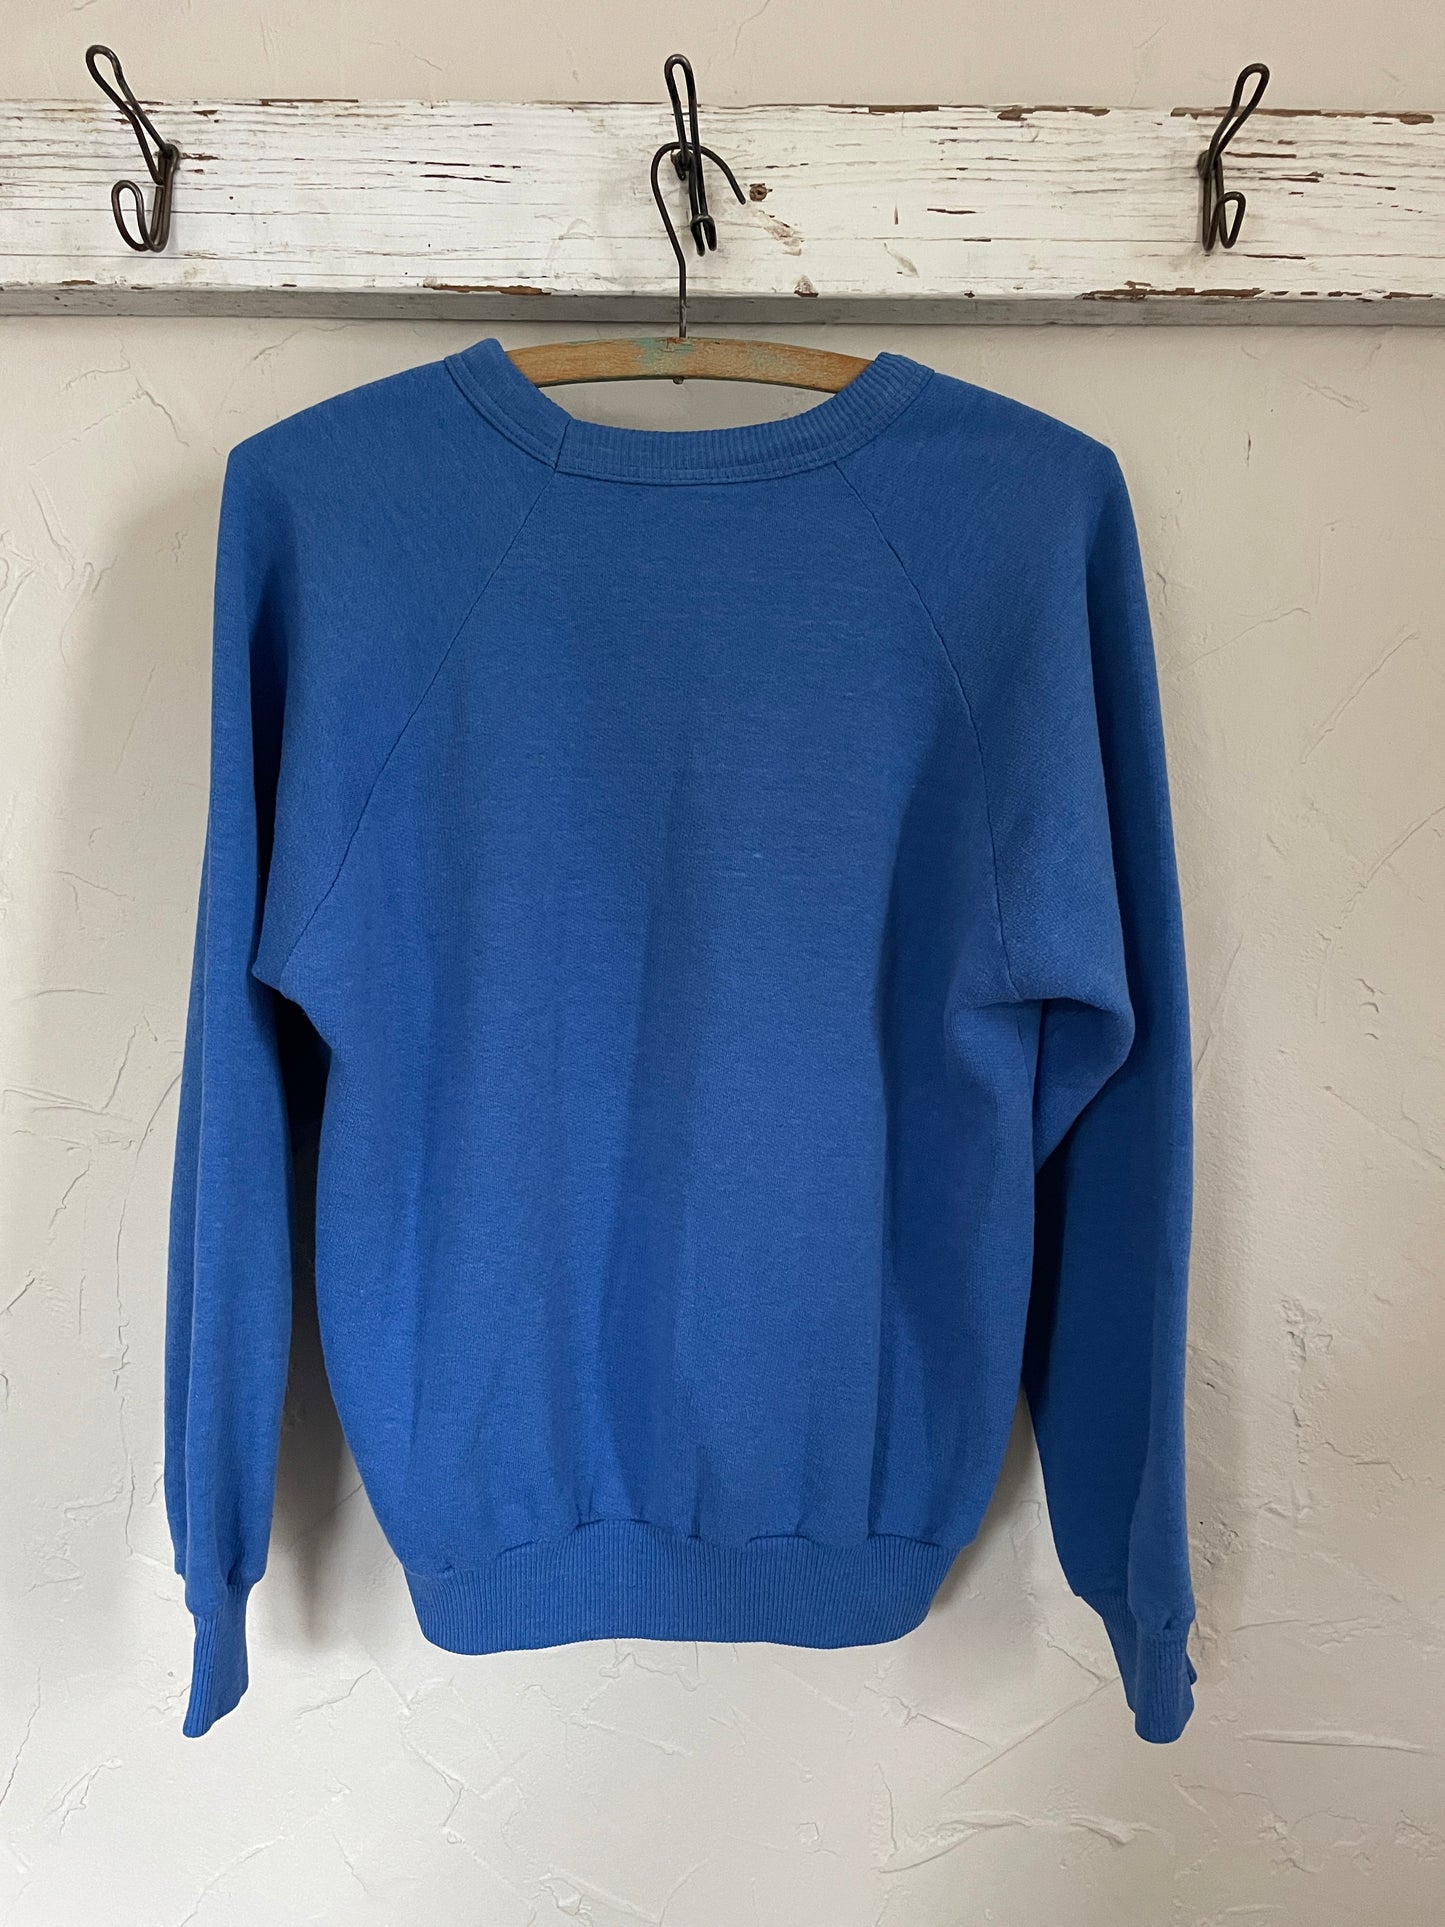 80s Expo ‘86 Sweatshirt